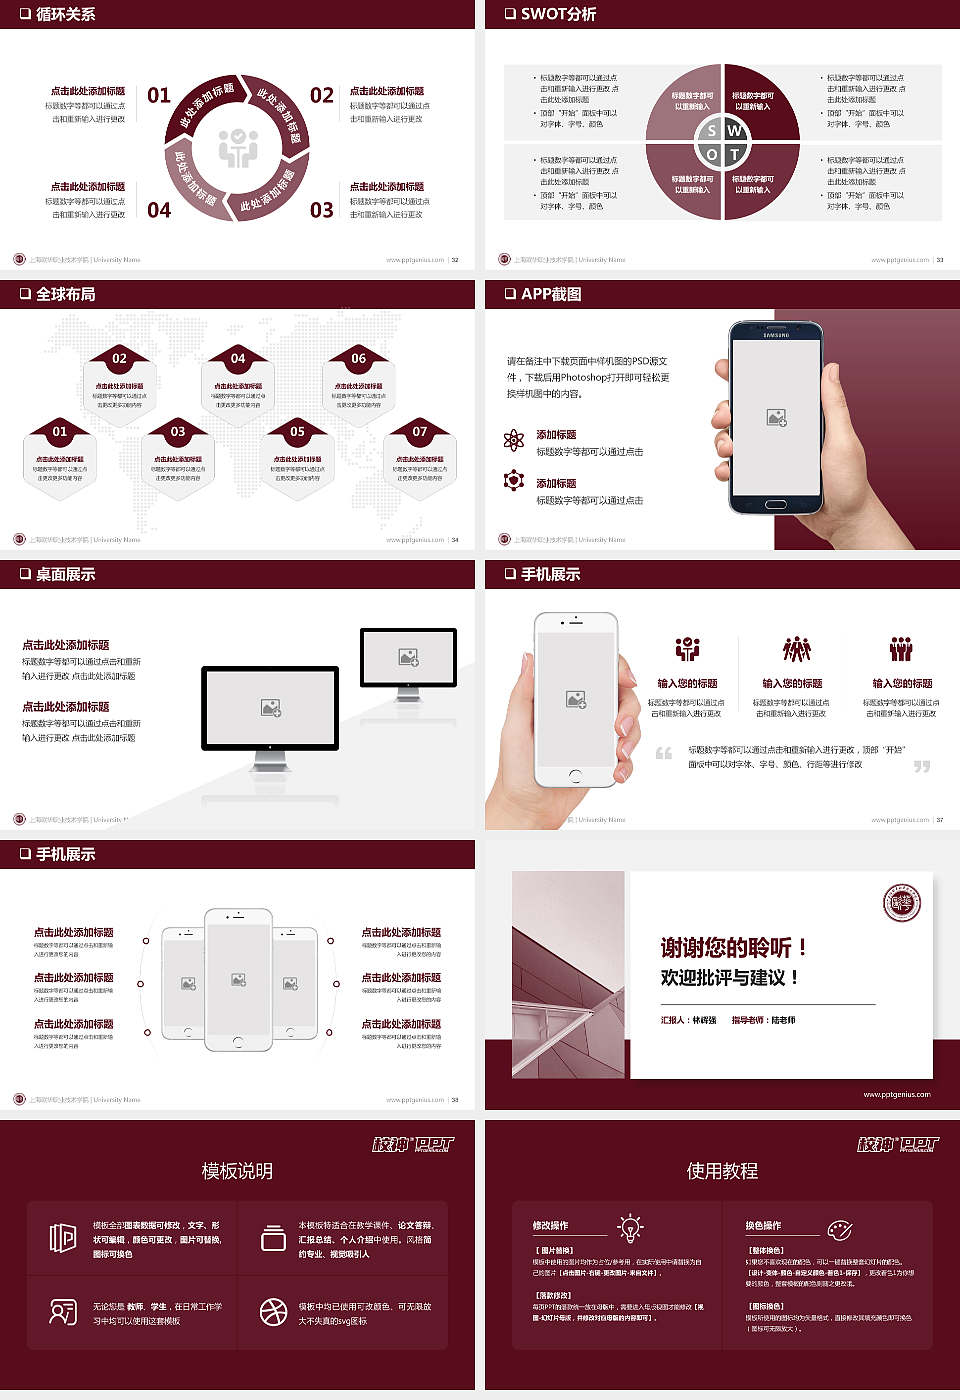 上海欧华职业技术学院PPT模板下载_幻灯片预览图5